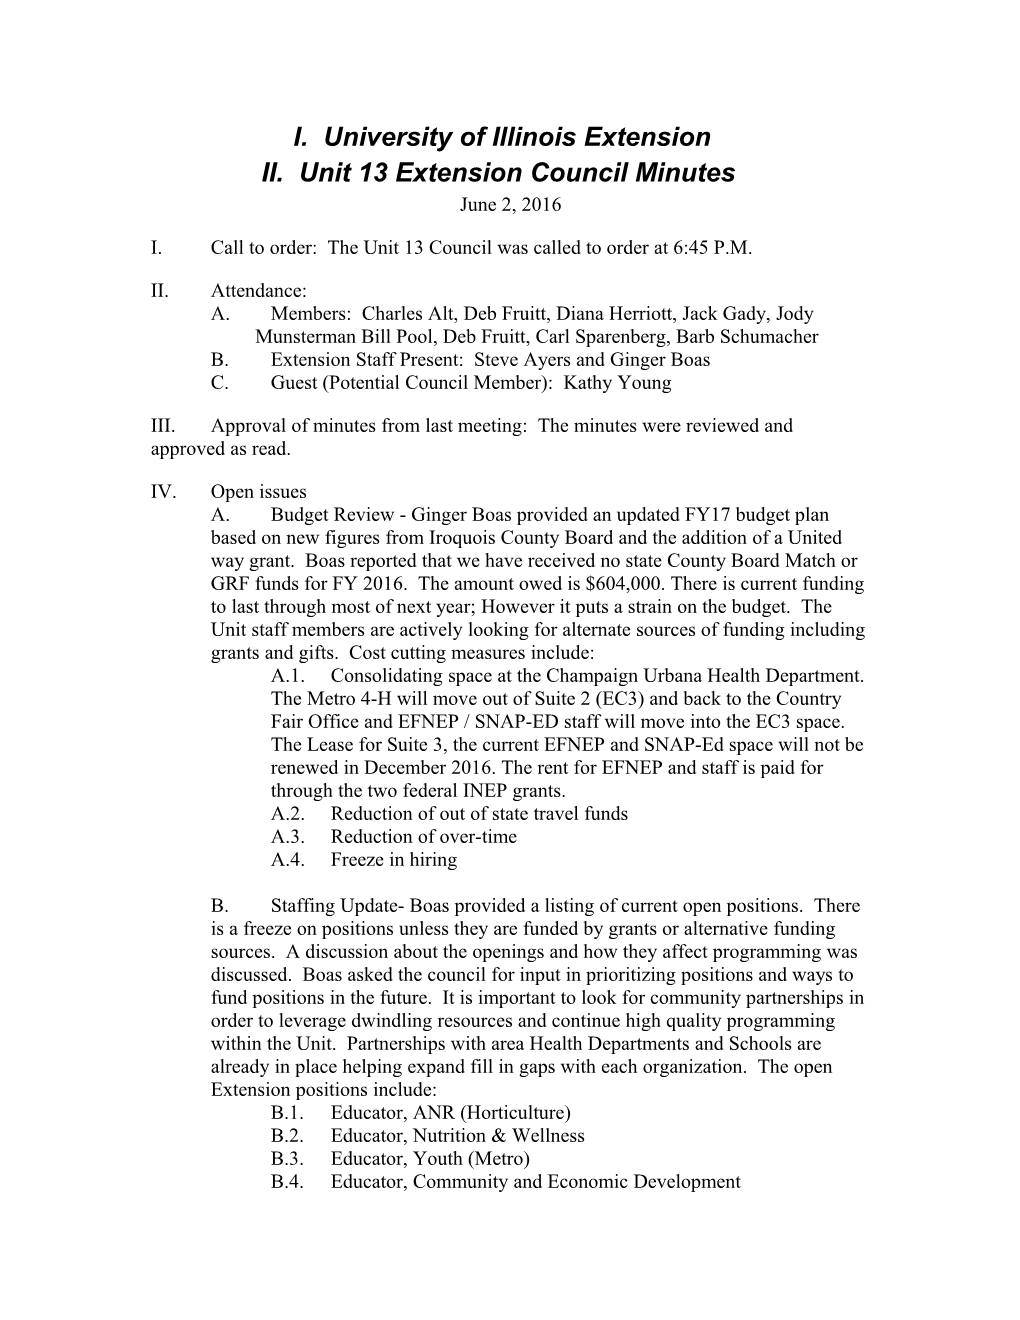 Unit 13 Extension Council Minutes